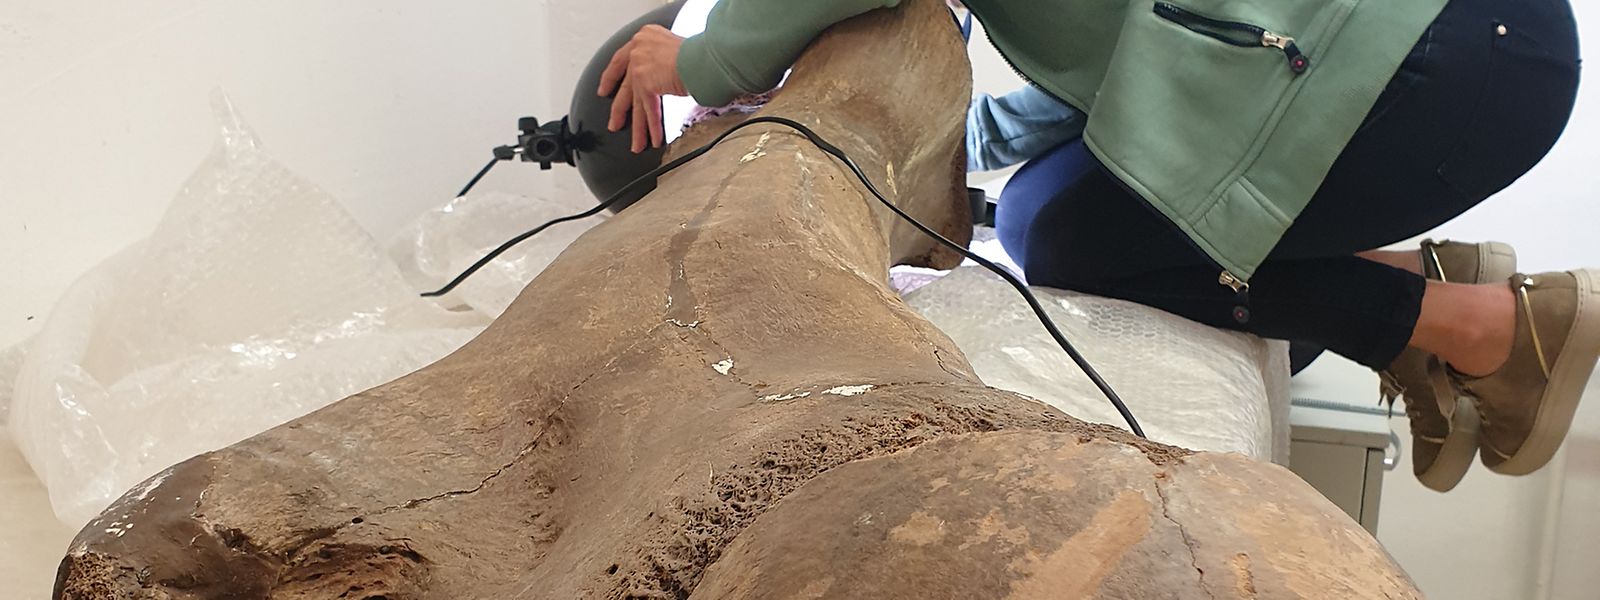 Prof. Dr. Sabine Gaudzinski-Windheuser untersucht den Oberschenkelknochen eines großen erwachsenen männlichen Europäischen Waldelefanten.